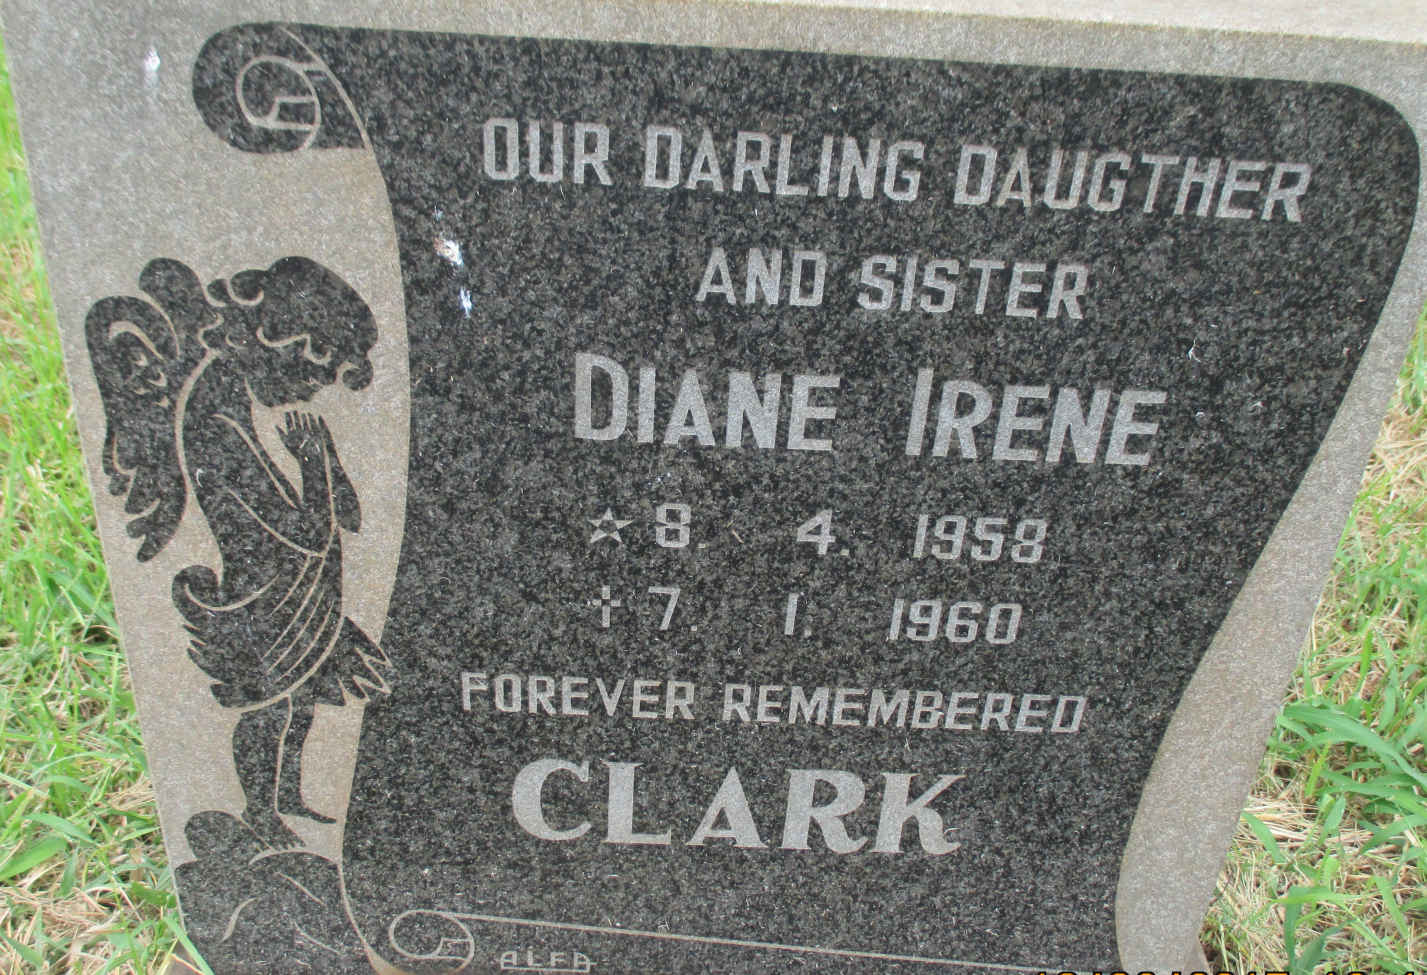 CLARK Diane Irene 1958-1960